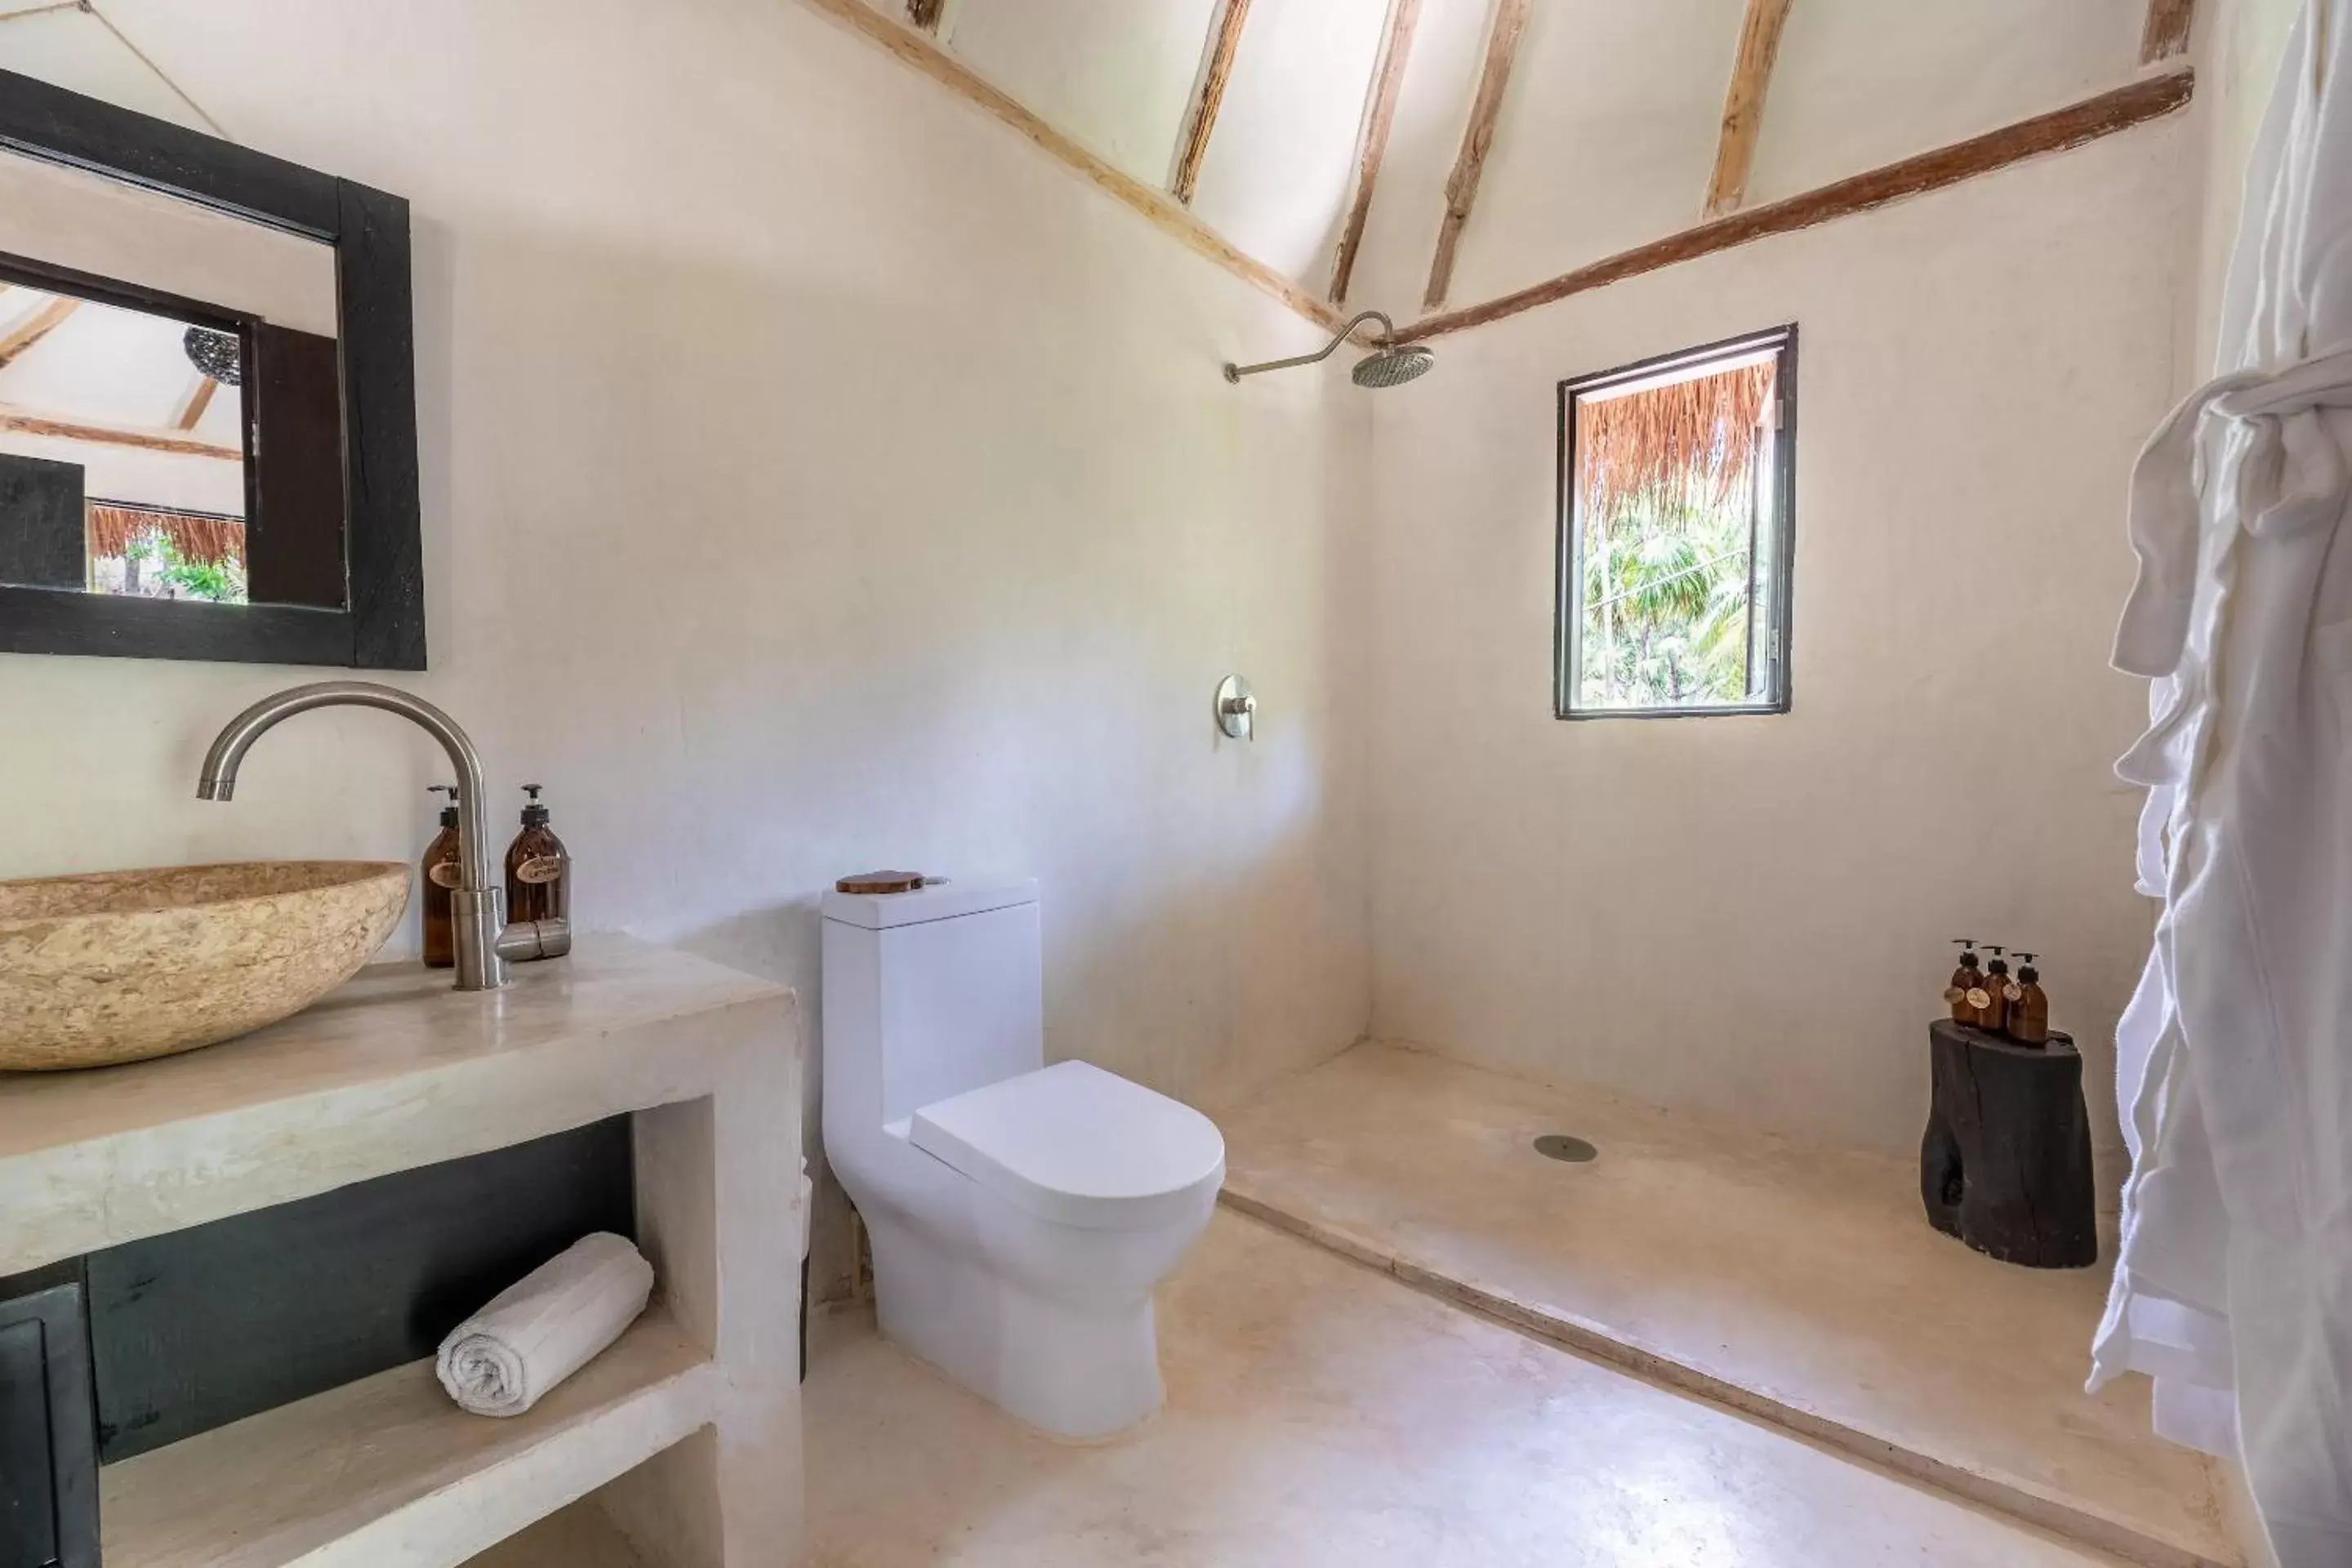 Bathroom in NEST Tulum